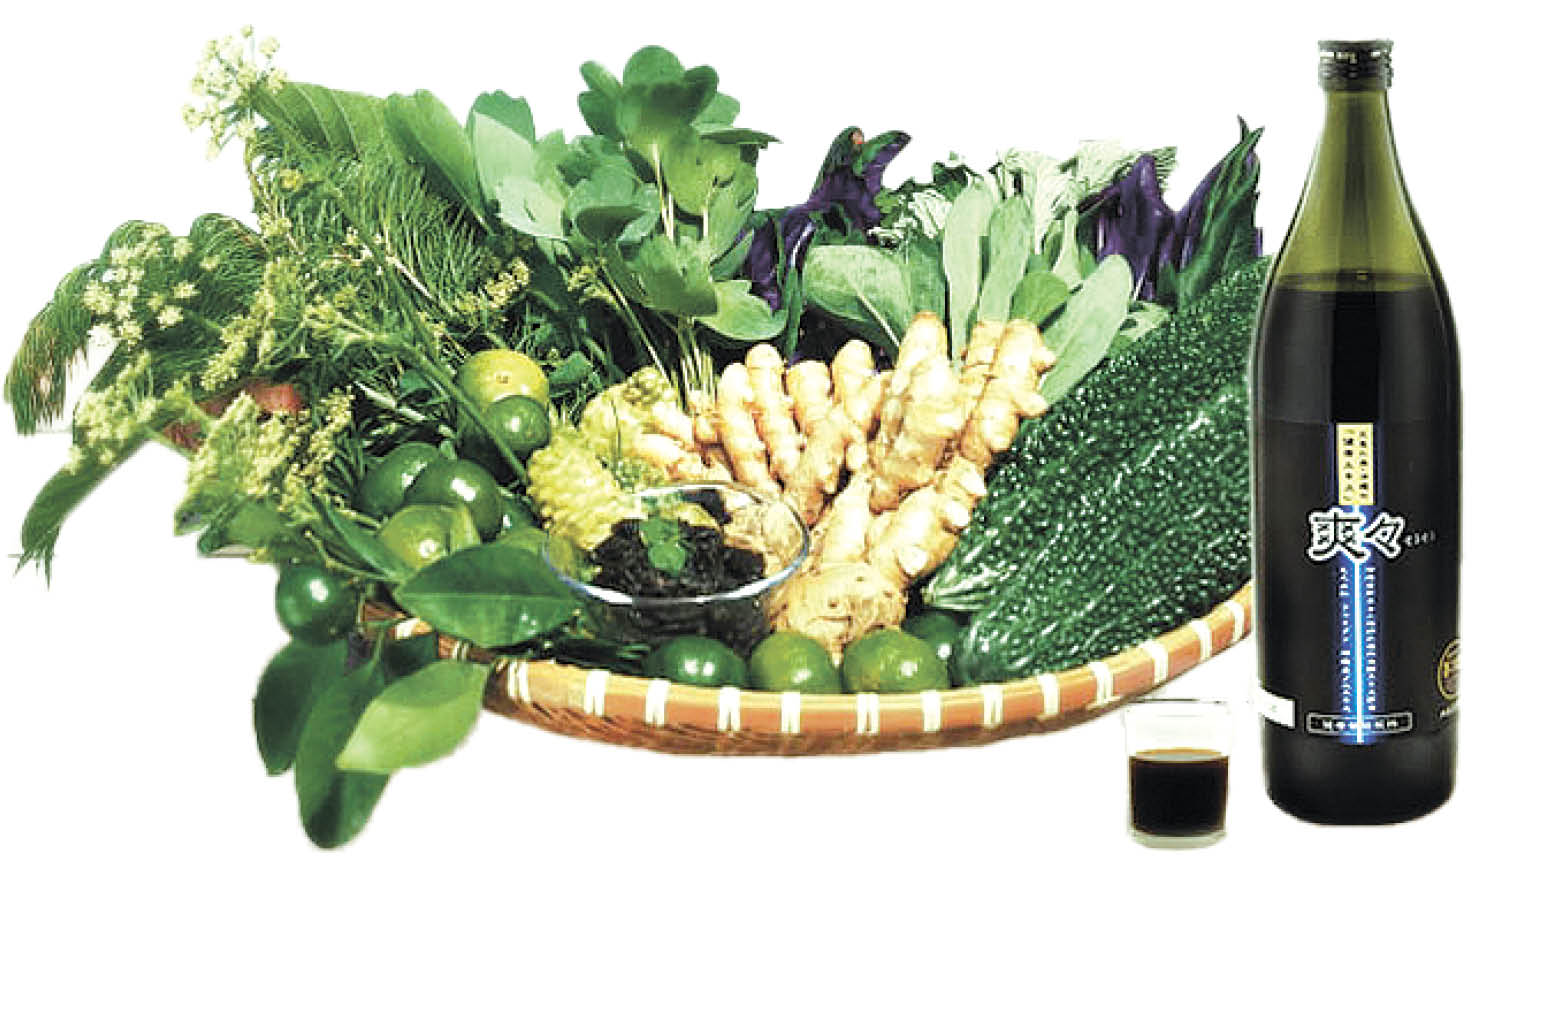 県産野草12種からつくられた植物発酵エキスに４種類の沖縄健康素材を加え、さっぱり飲みやすく仕上がっている「爽々」